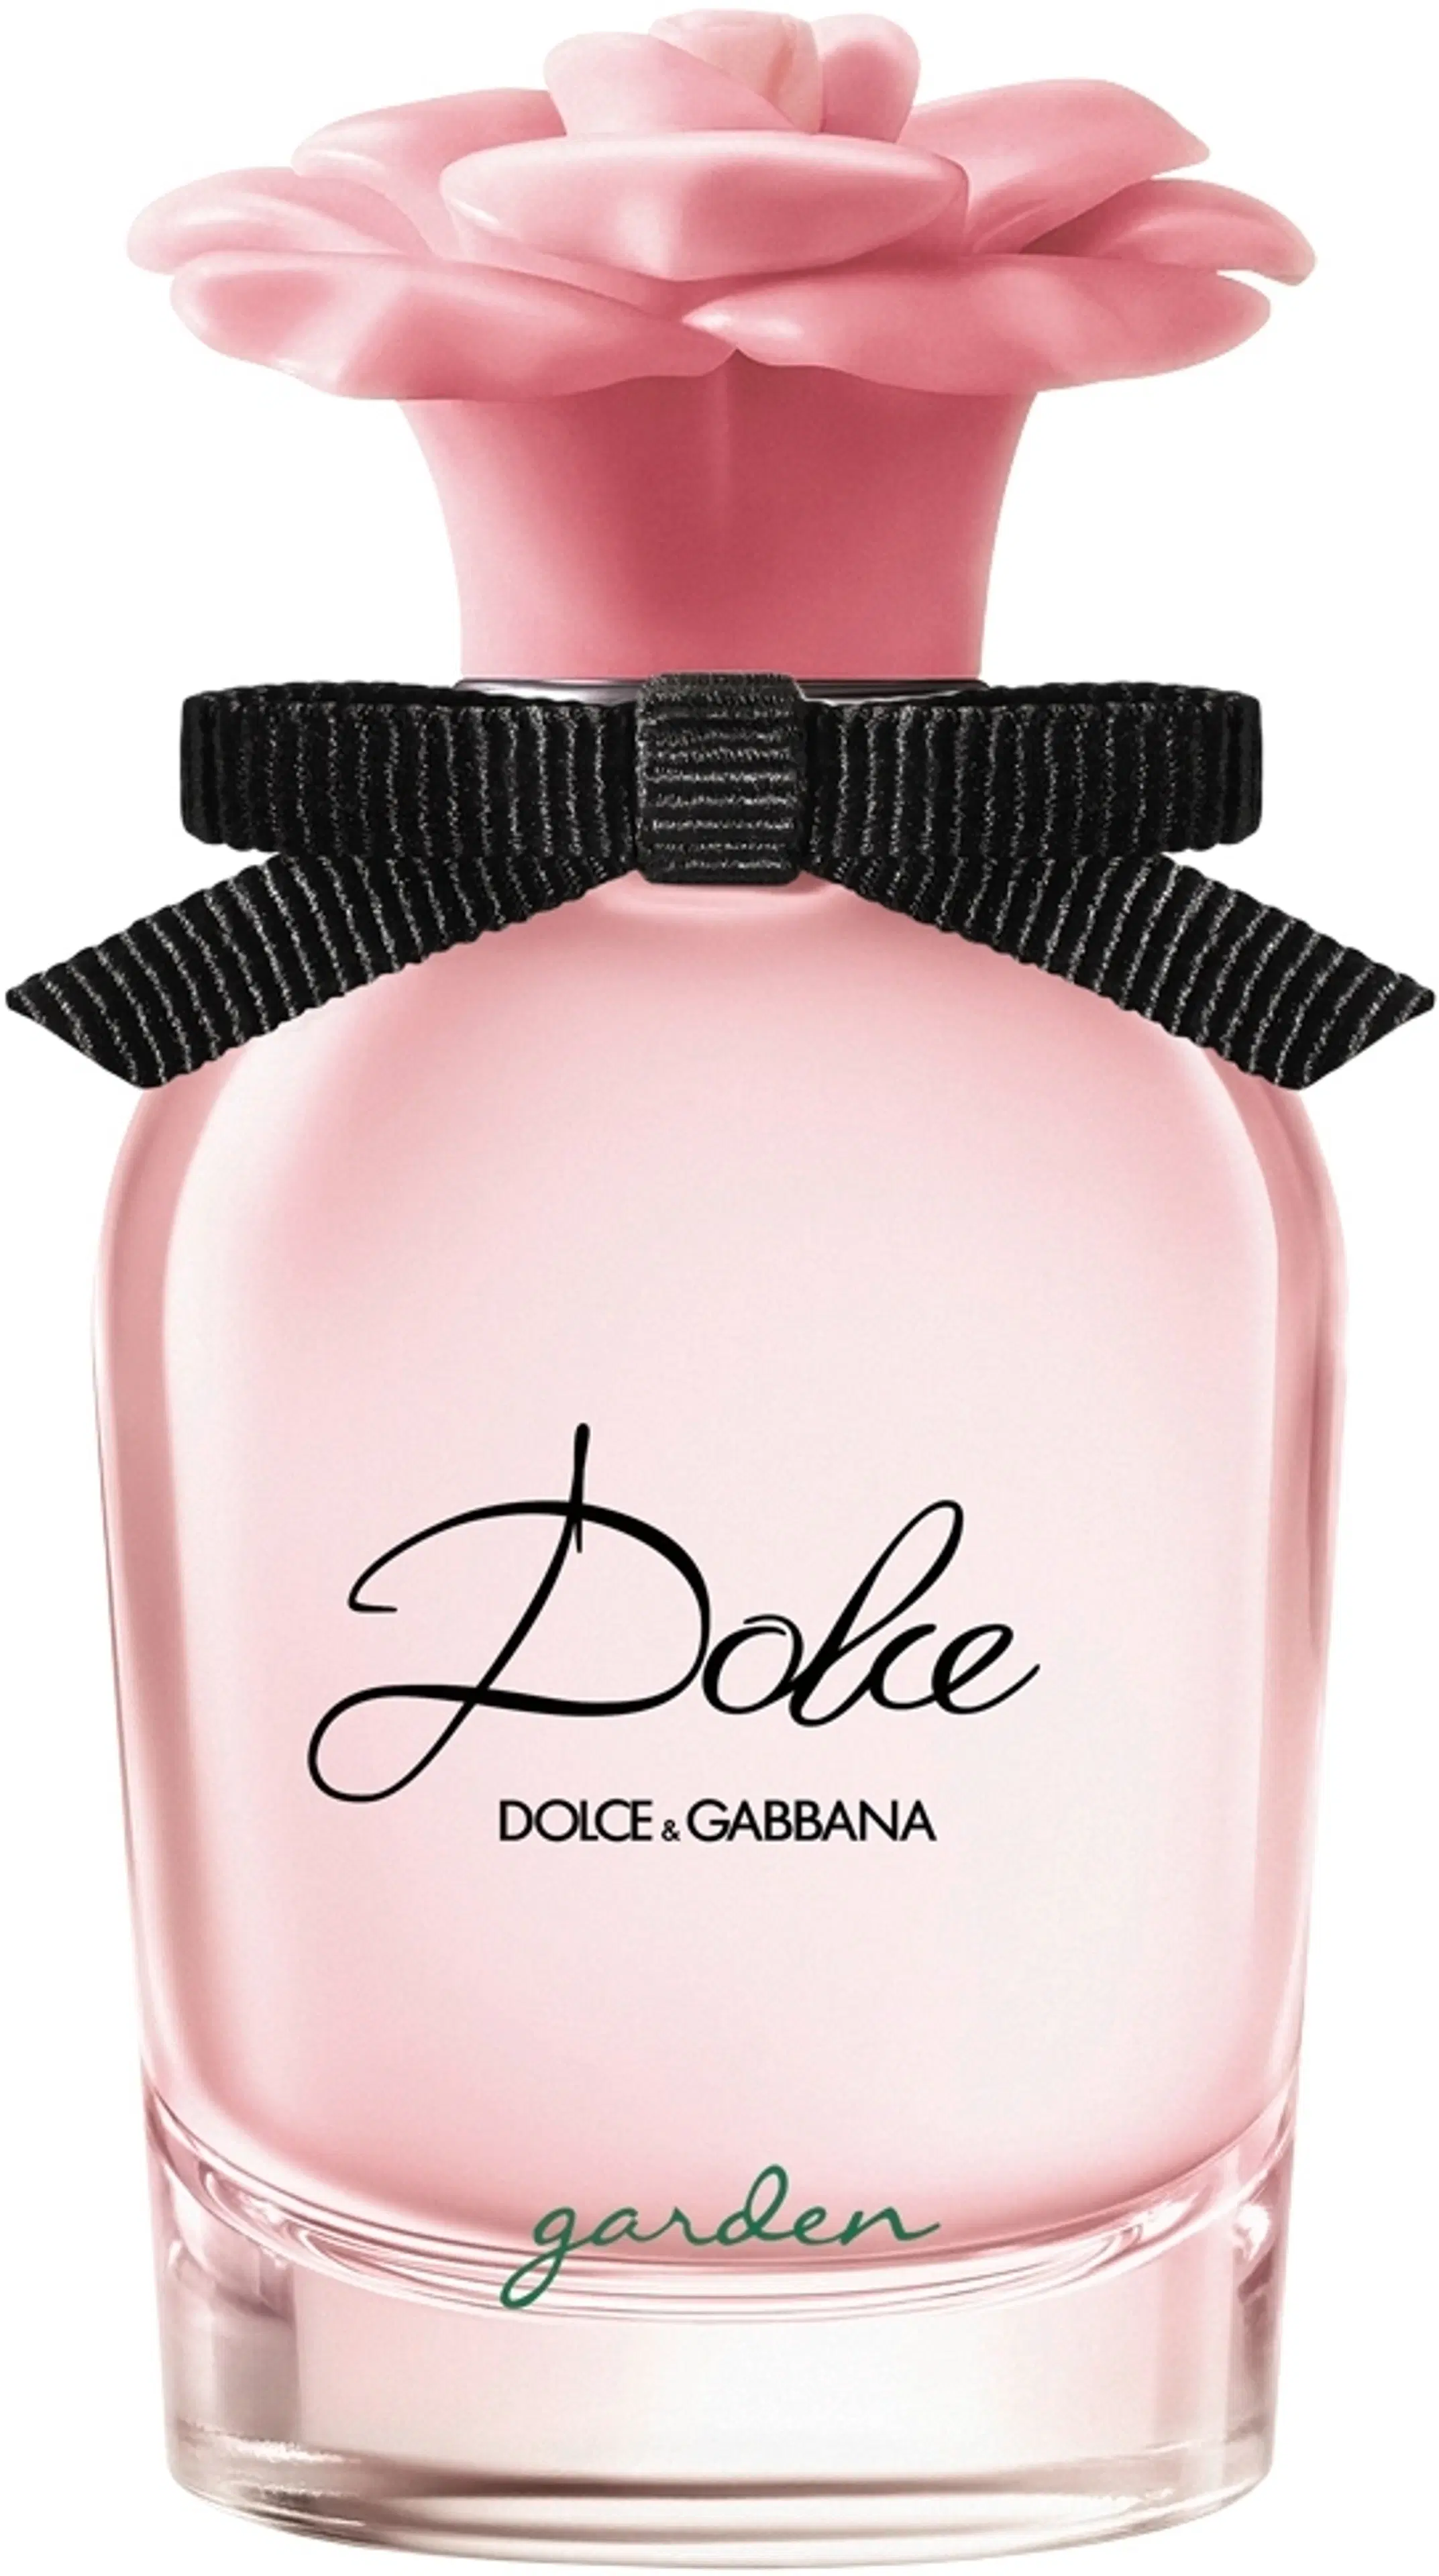 DOLCE & GABBANA Dolce Garden EdP tuoksu 30 ml